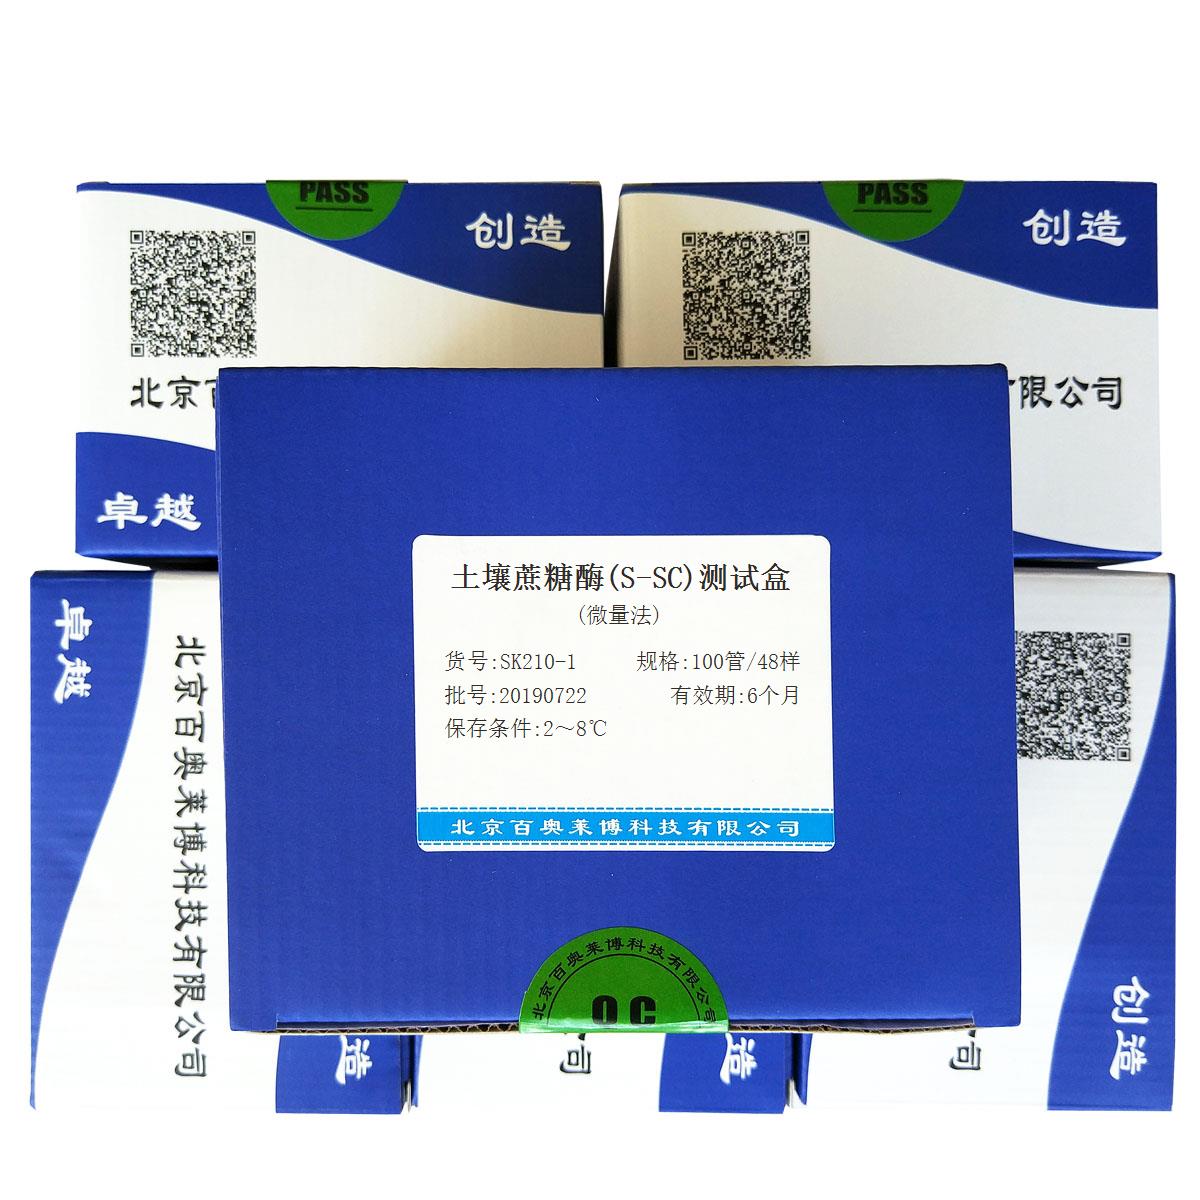 土壤蔗糖酶(S-SC)测试盒(微量法)北京价格